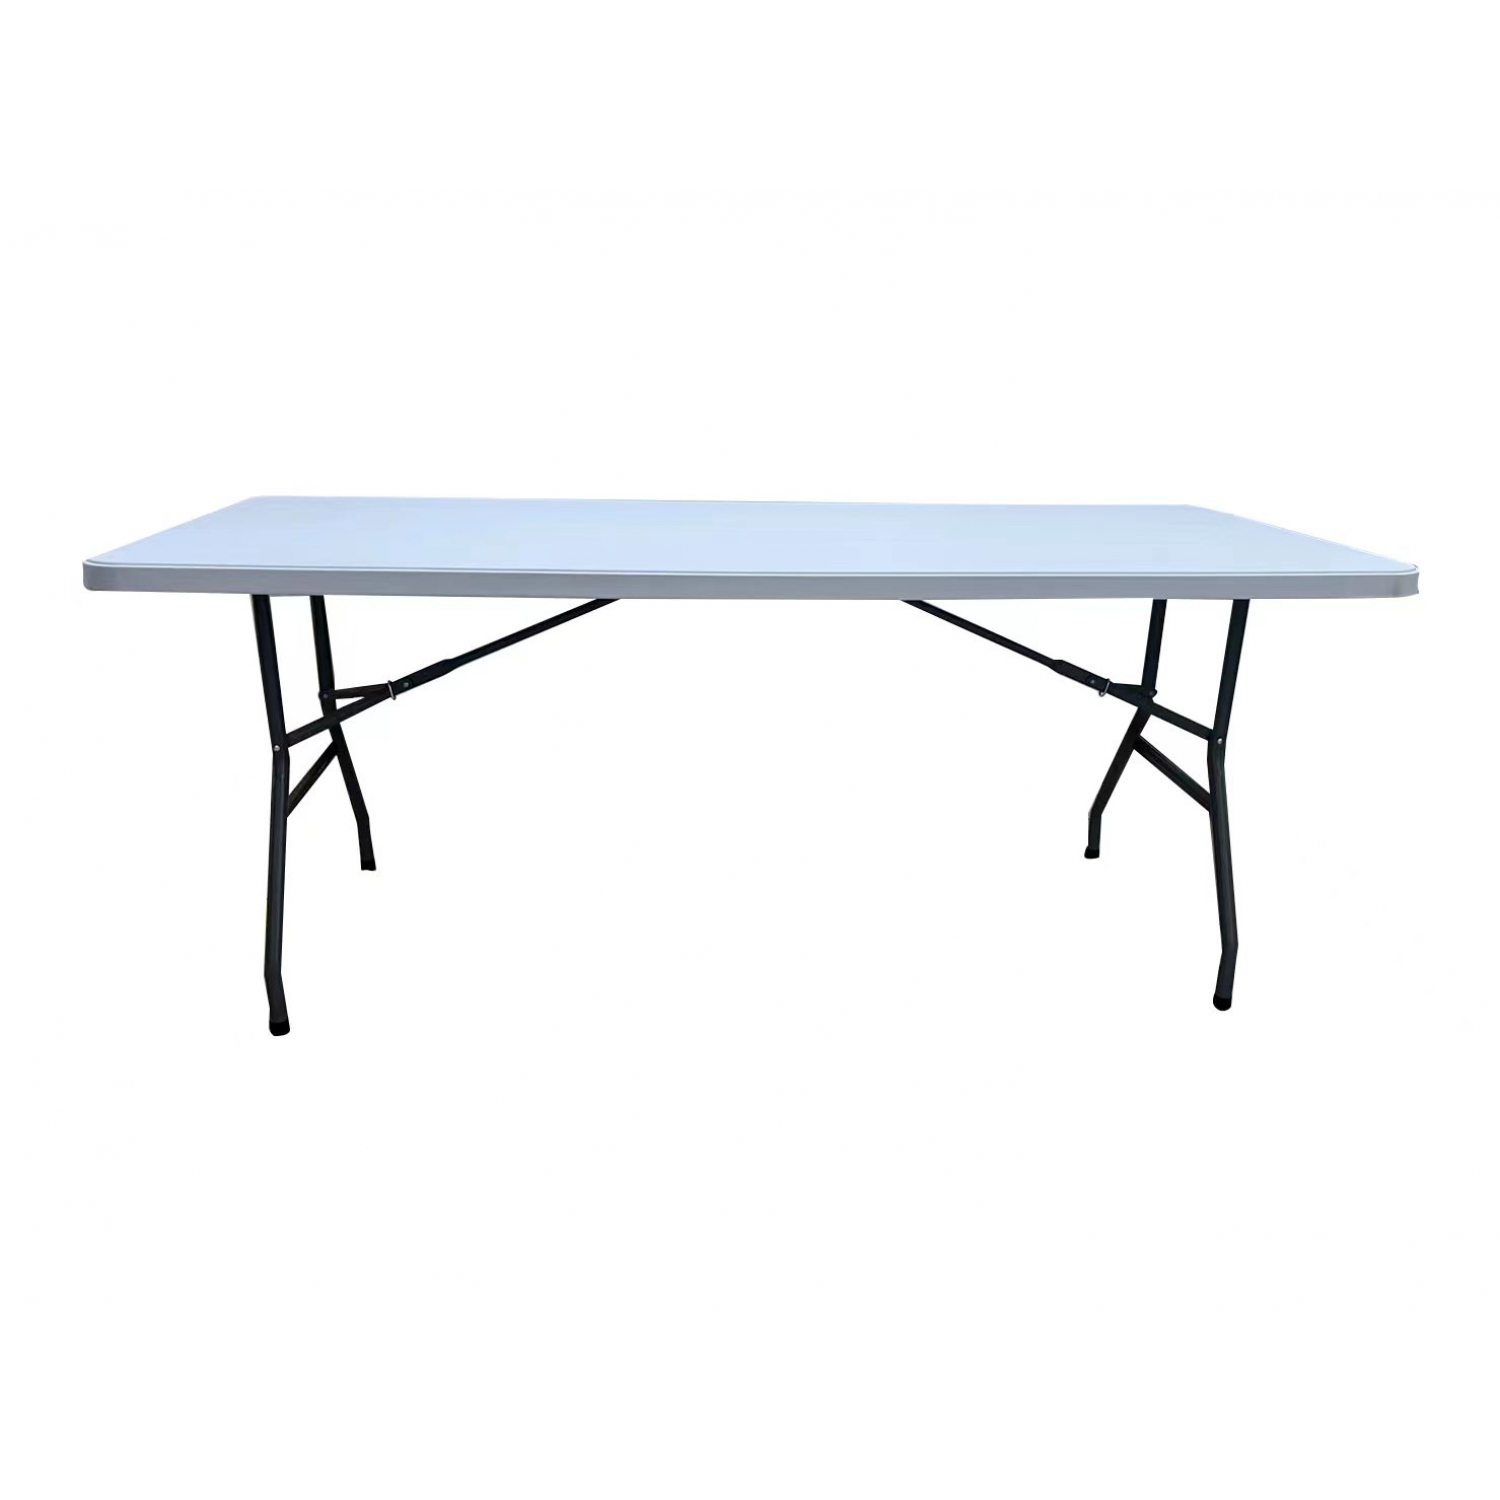 Tree O โต๊ะเอนกประสงค์ รุ่นRB-3072-WH ขนาด 6 ฟุต สีขาว